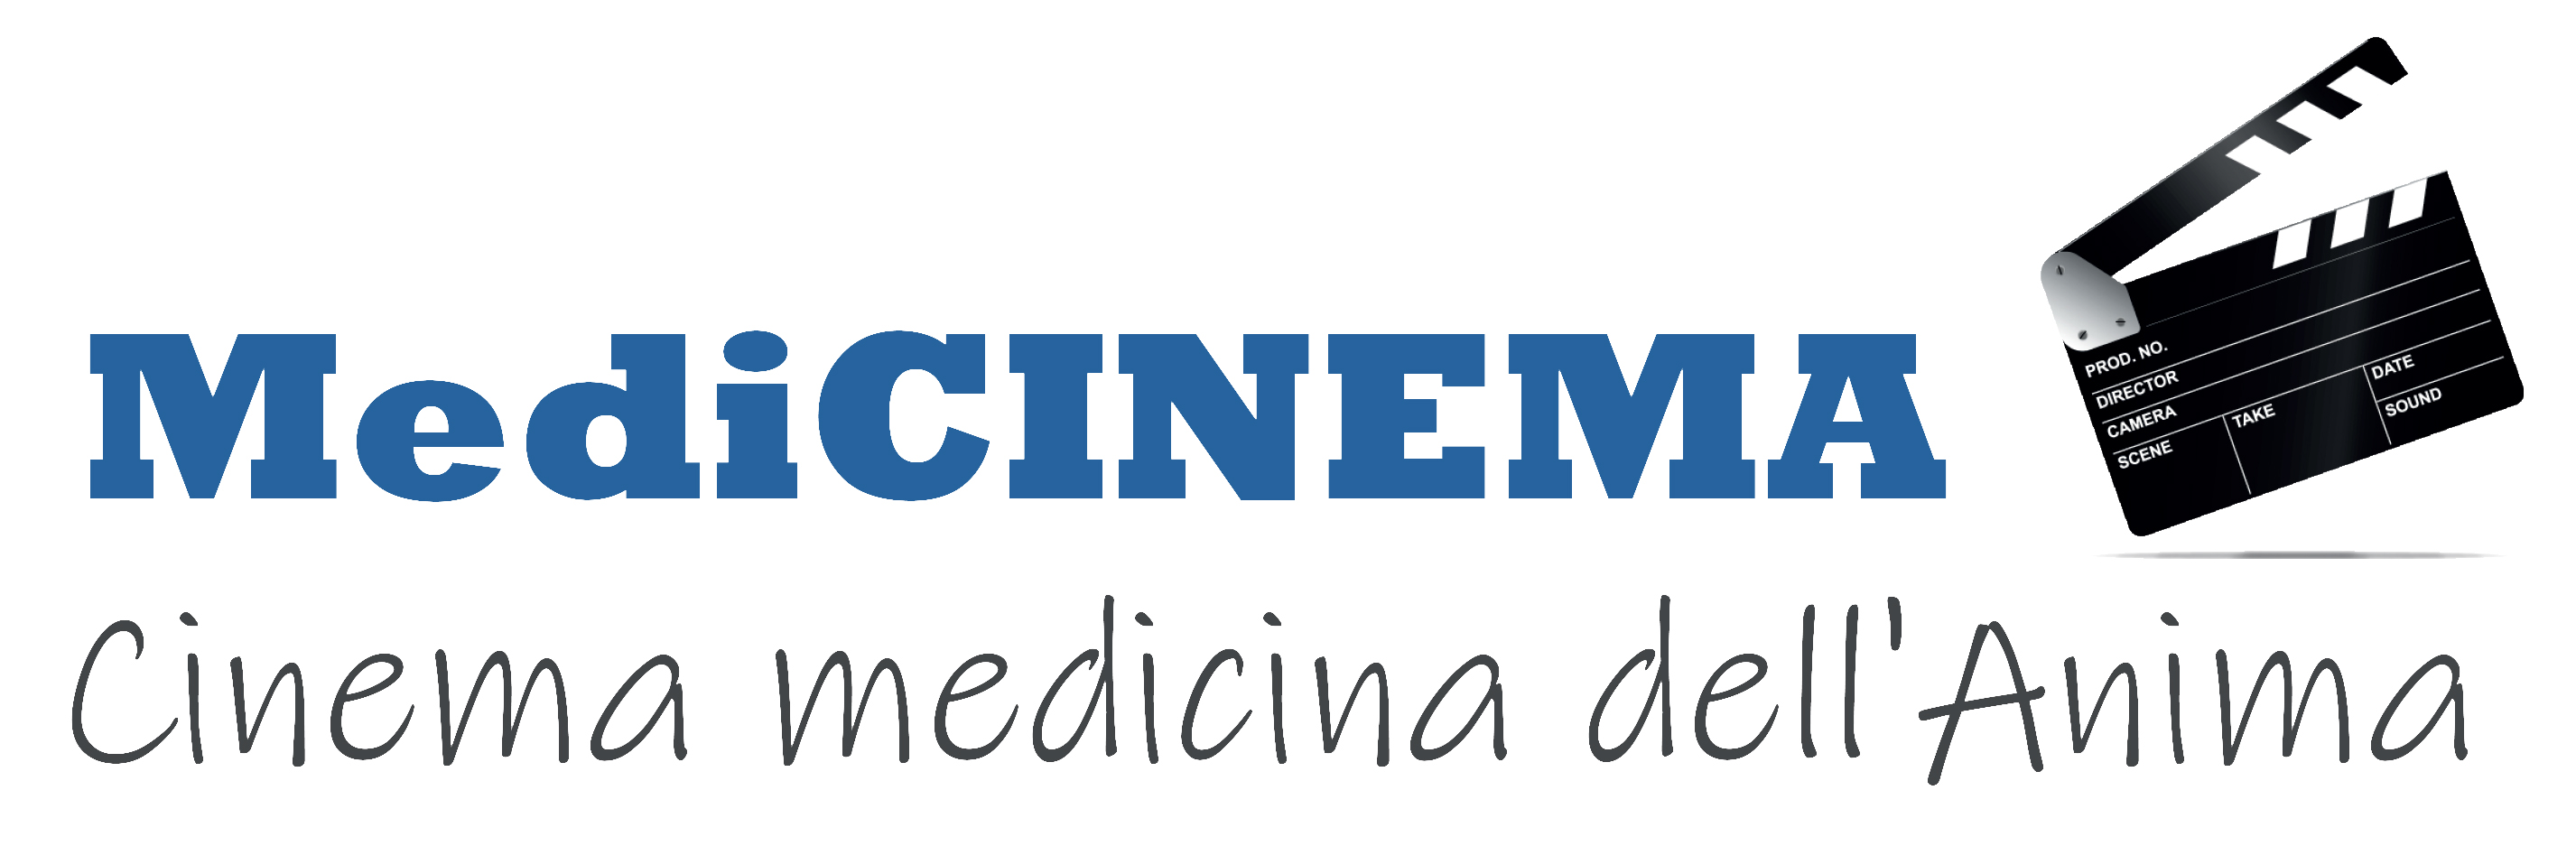 logo medicinema jpg